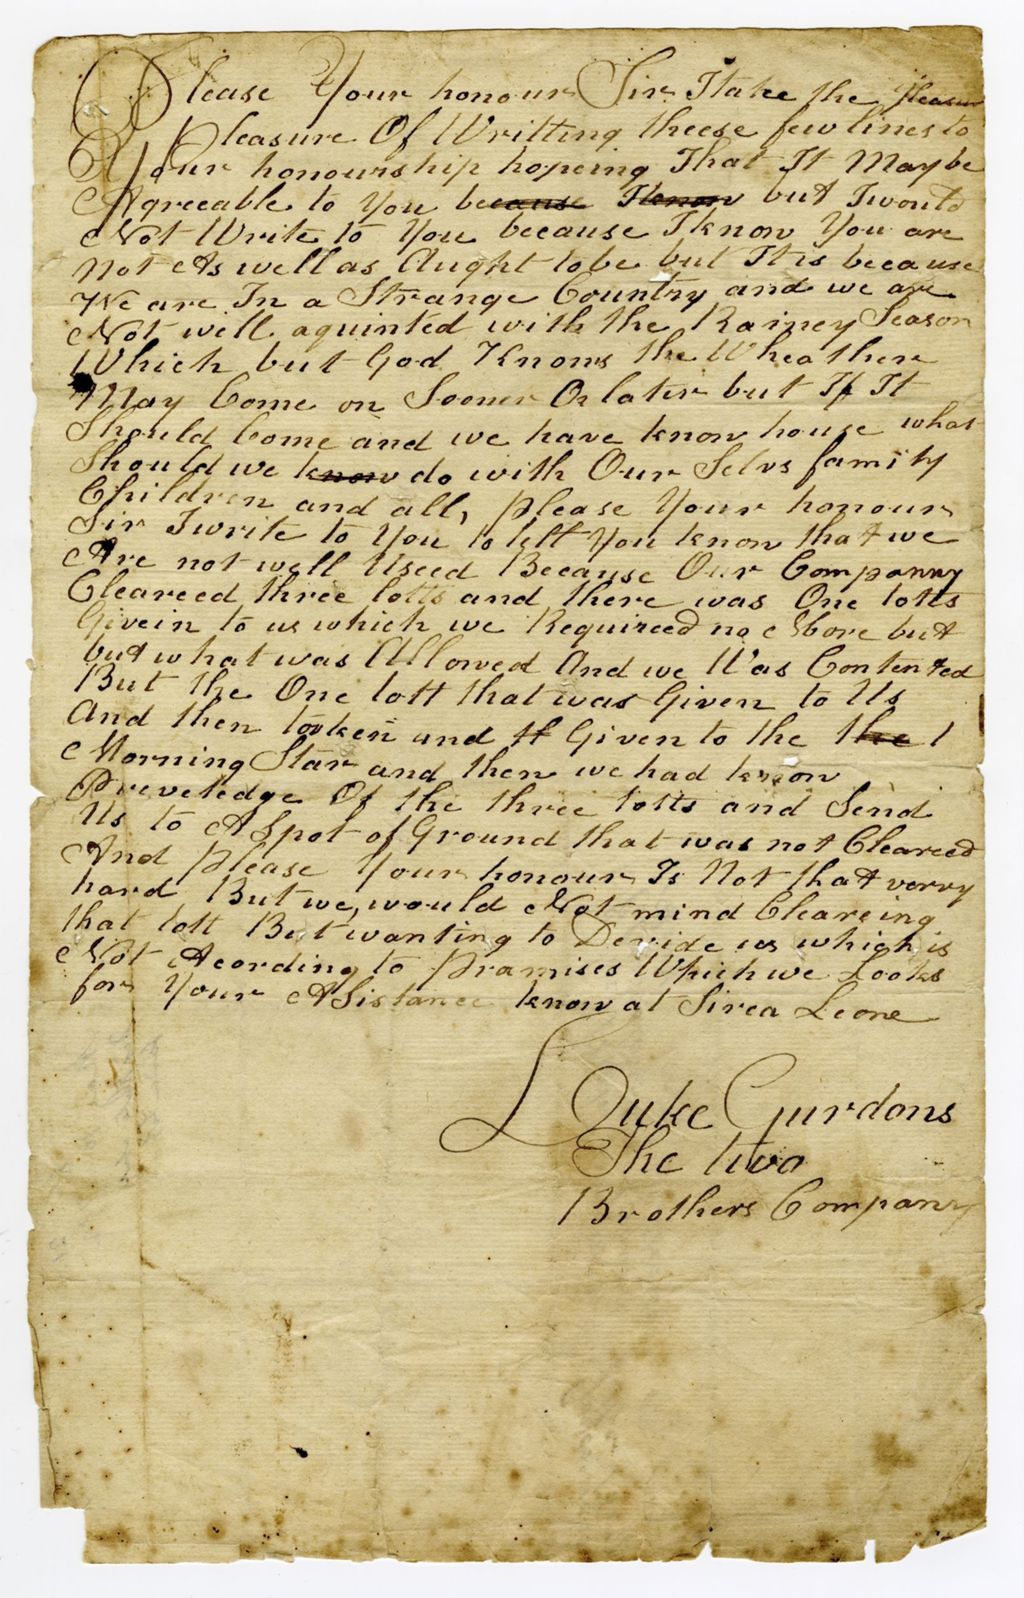 Miniature of Letter from Luke Gurdons